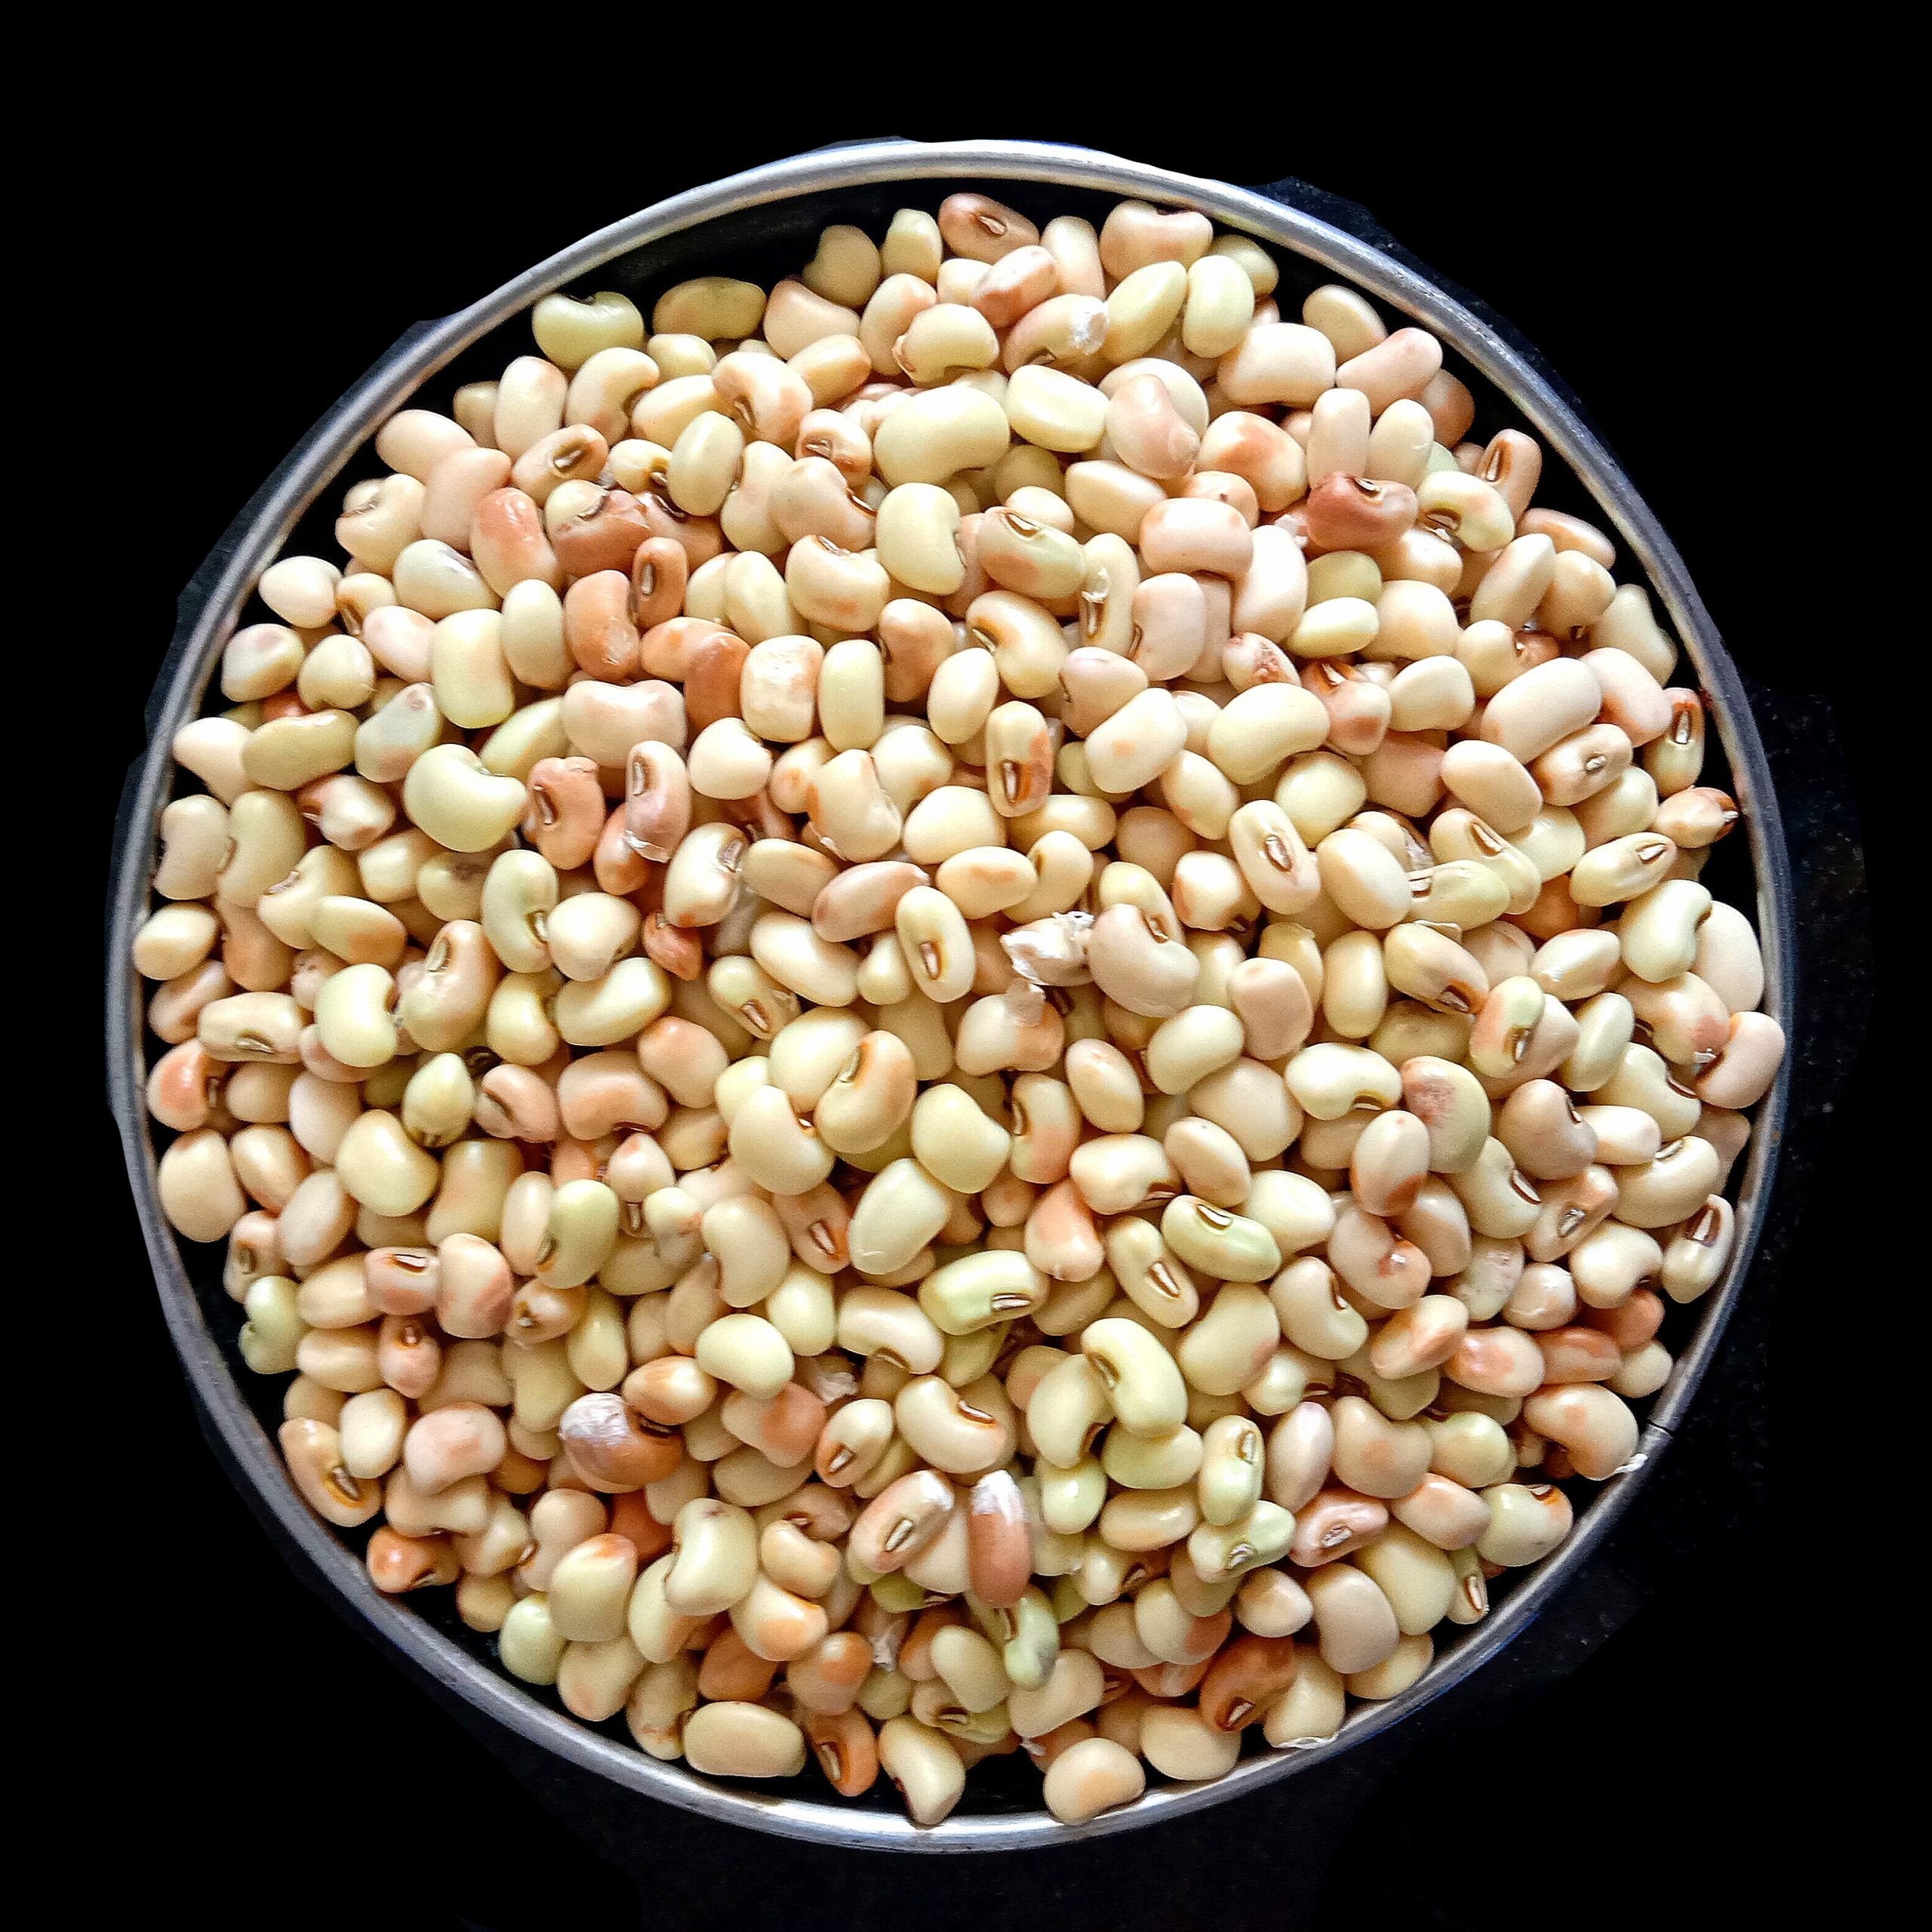 Cowpea grains in a bowl